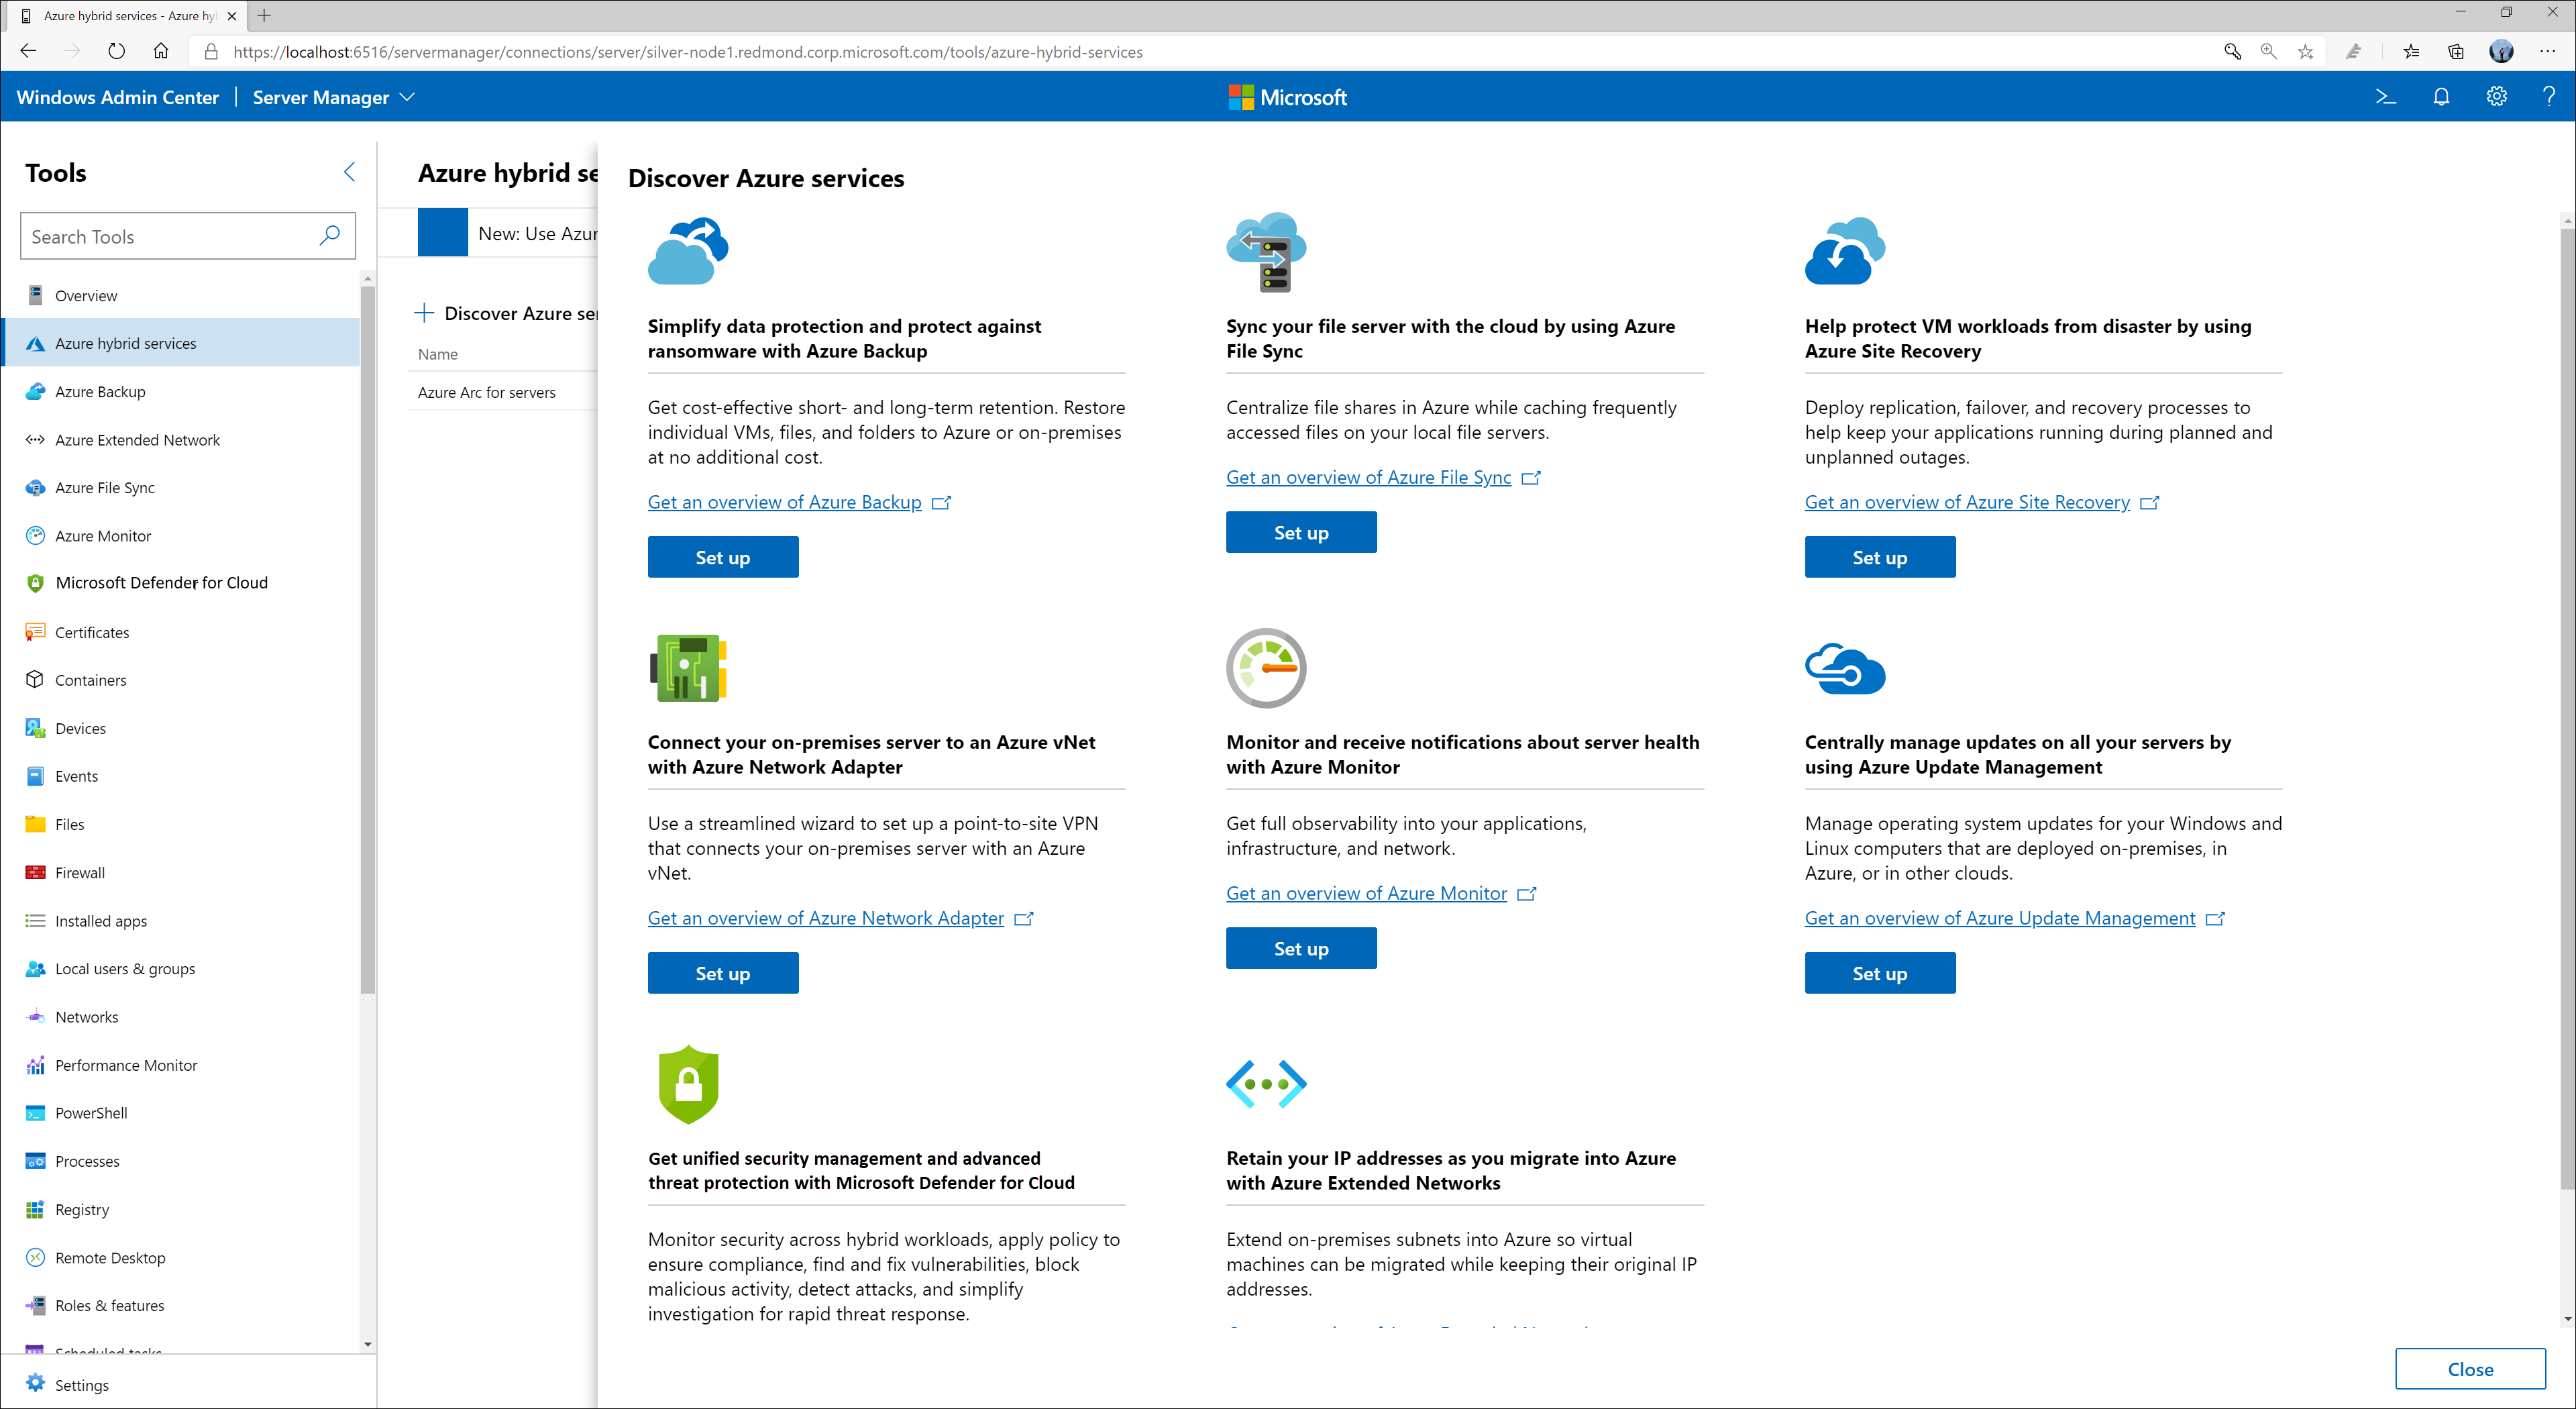 Windows Admin Center fornece um local centralizado de todos os serviços integrados do Azure. Você pode usar a ferramenta de serviços híbridos do Azure para gerenciar os recursos híbridos de VMs no Azure e no local.